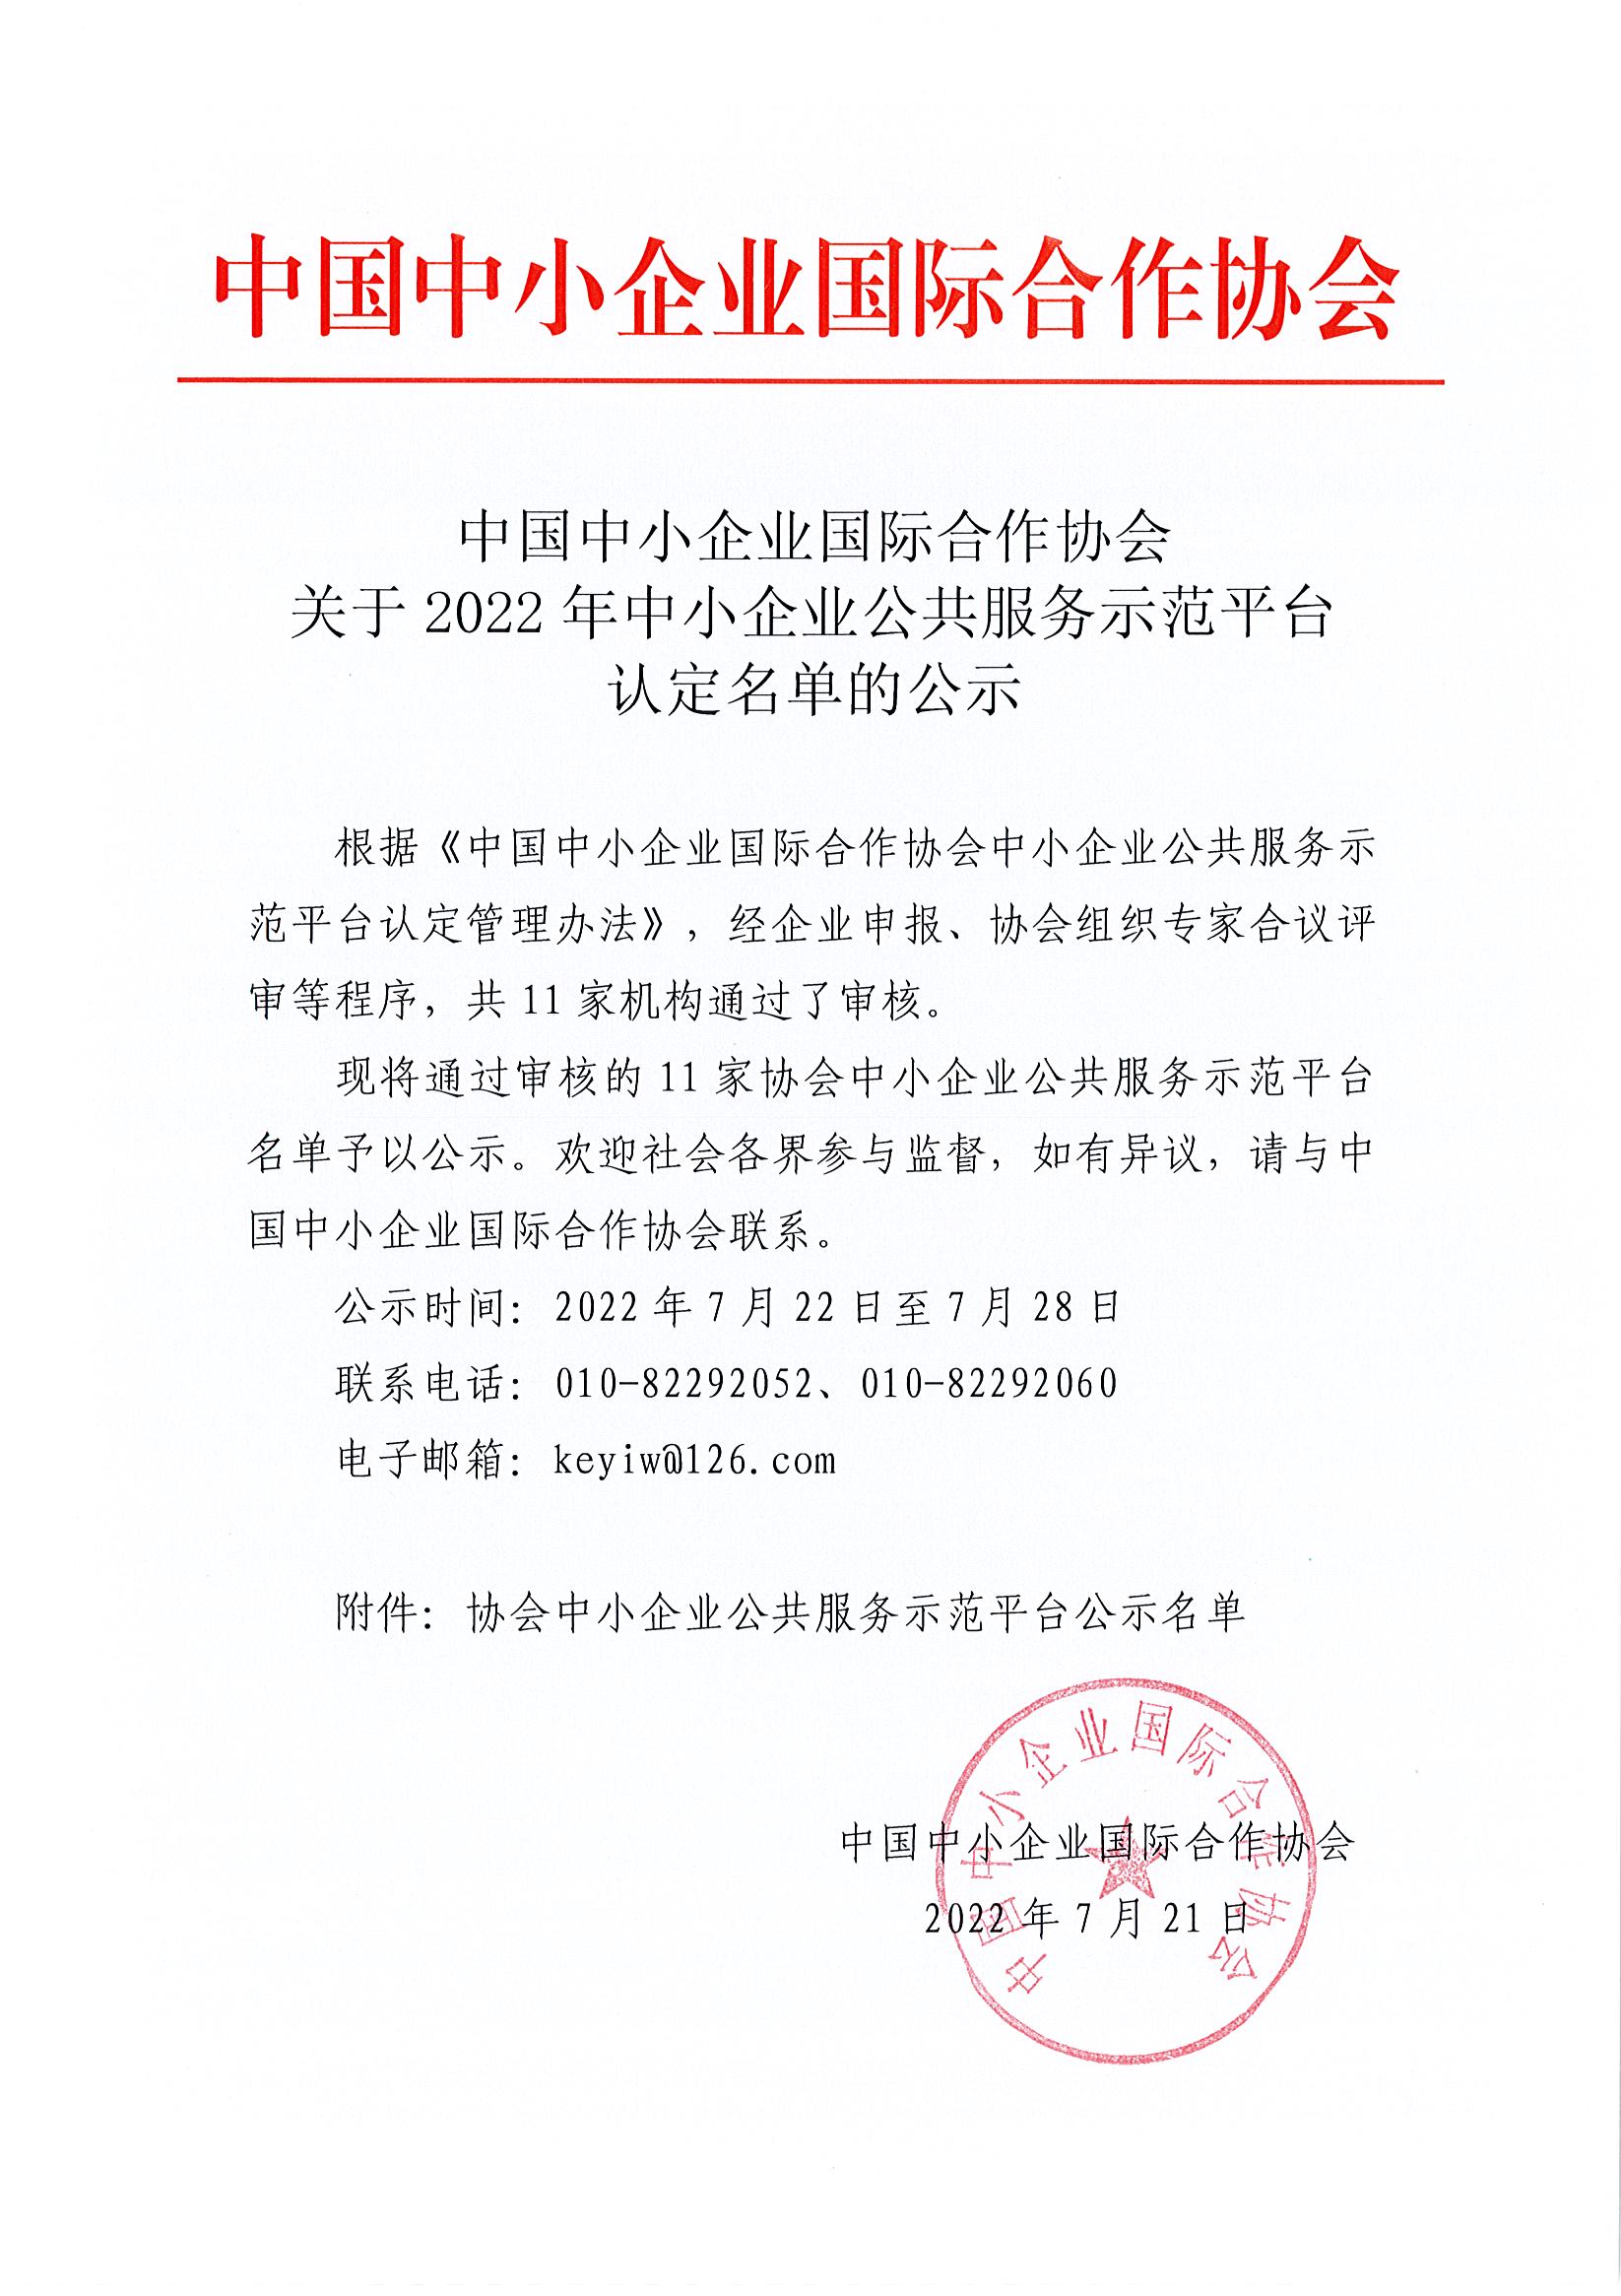 中国中小企业国际合作协会关于2022年中小企业公共服务示范平台认定名单的公示_页面_1.jpg